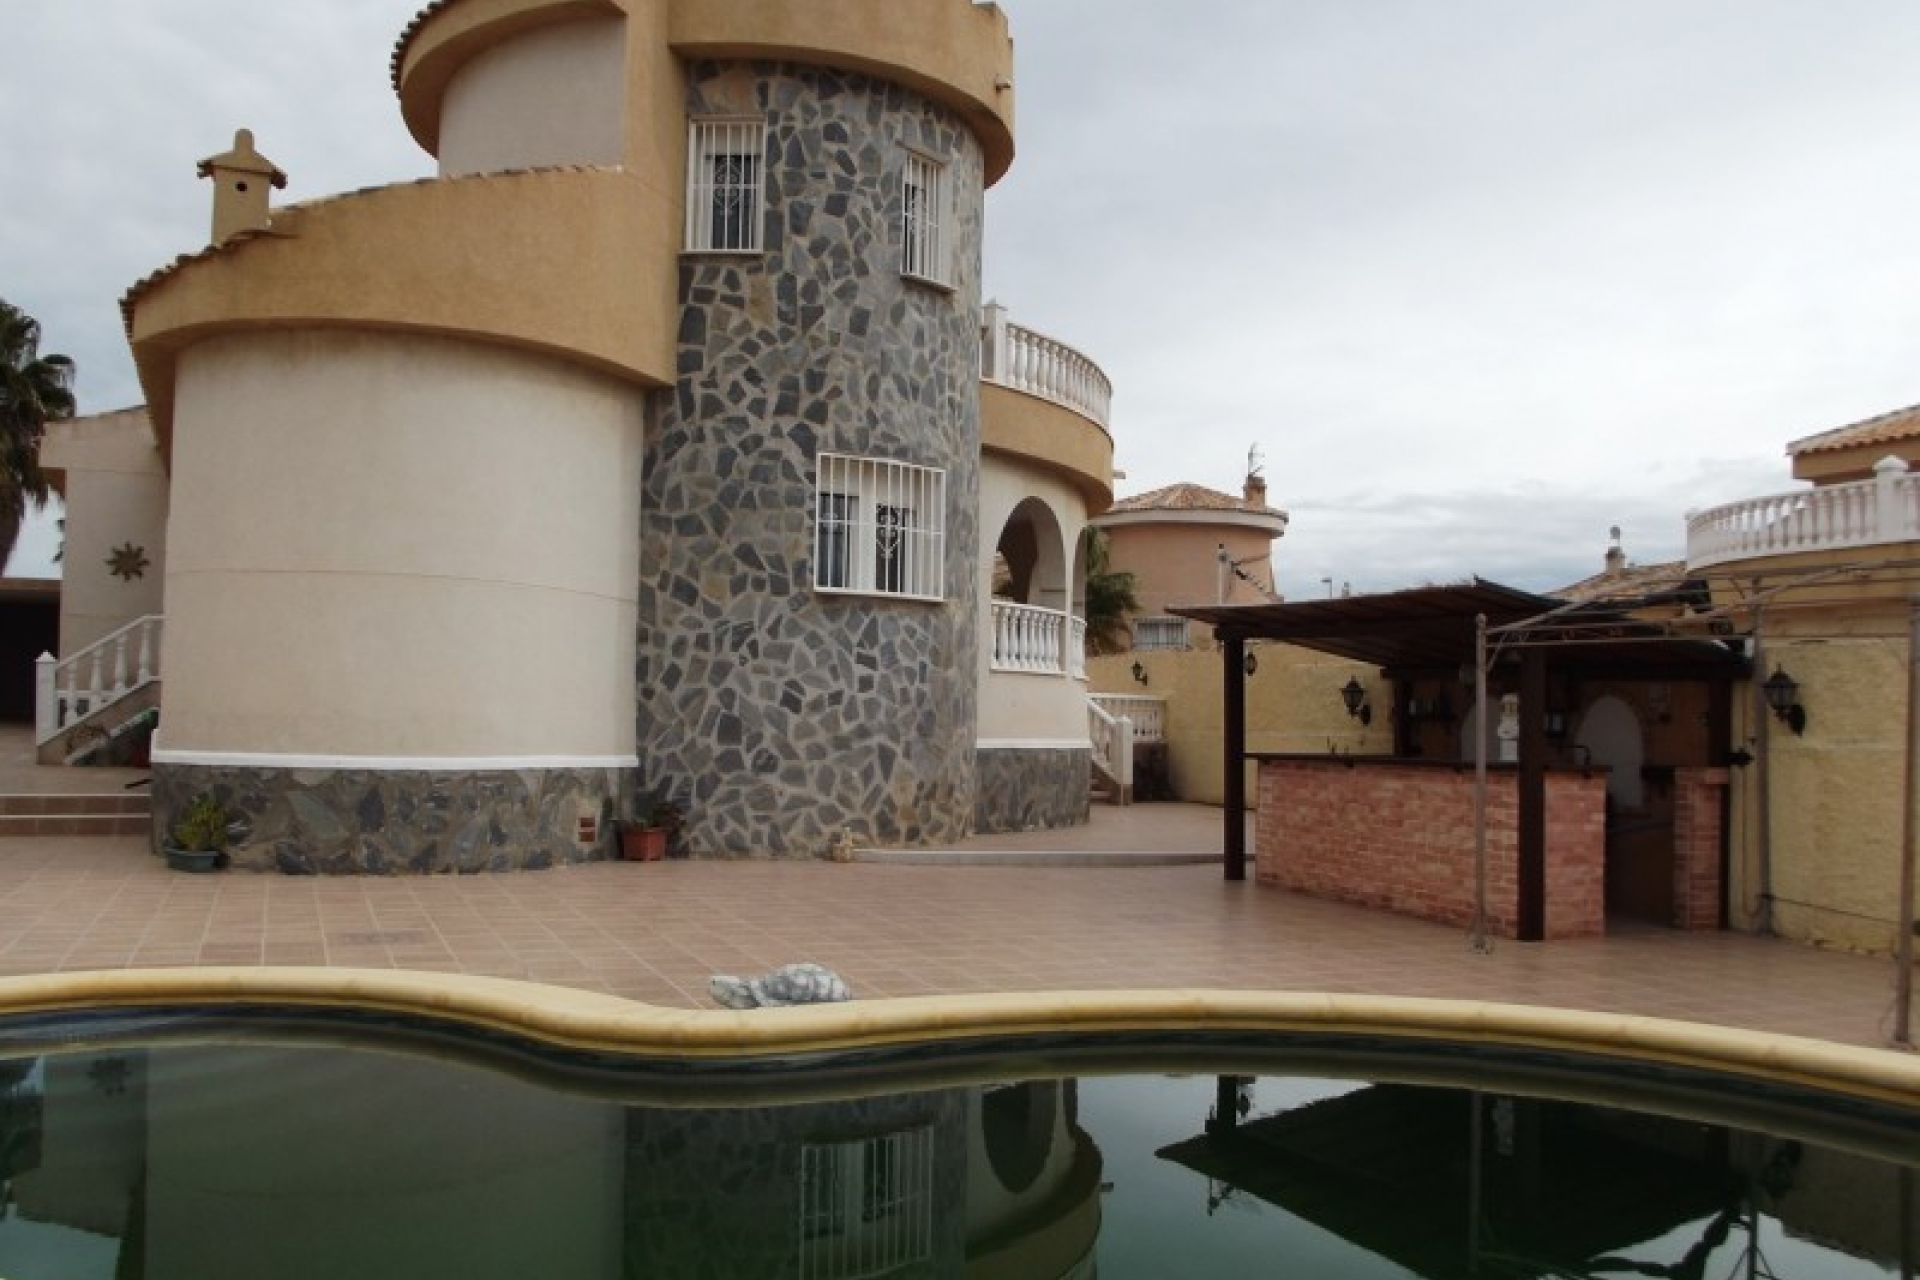 Ciudad Quesada bargain Villa property sale Costa Blanca